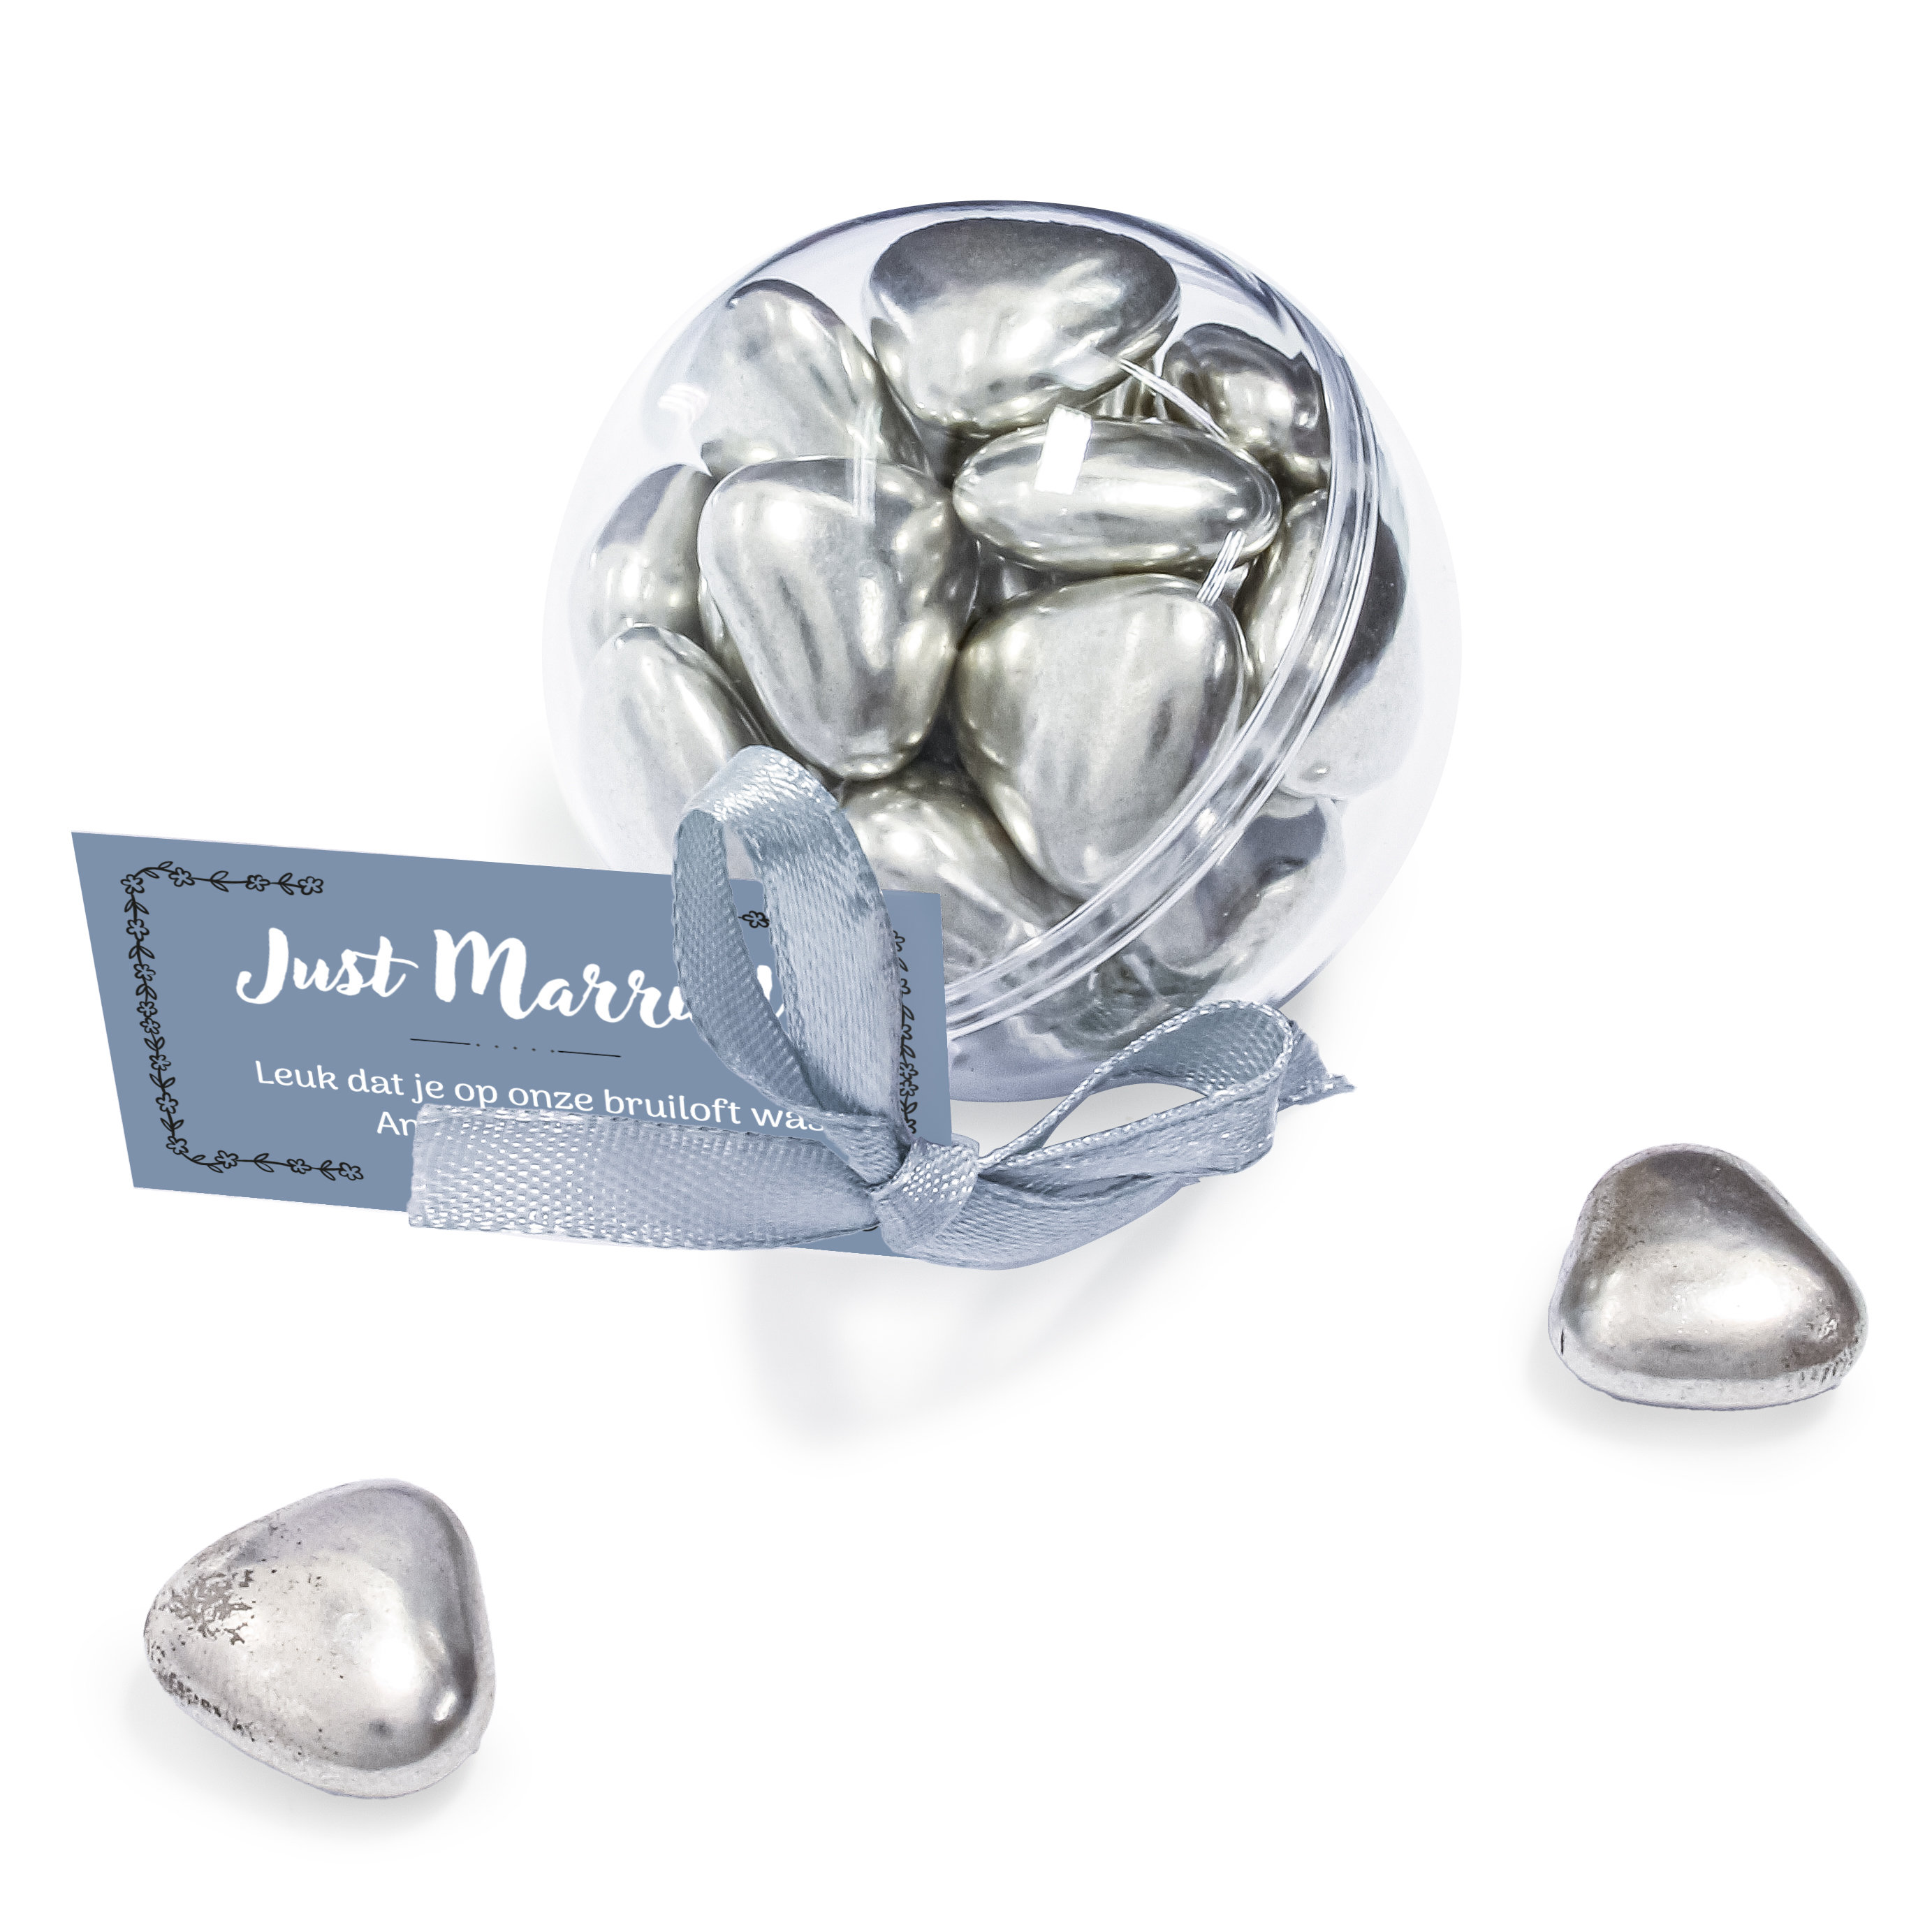 Jubileum bedankje - Transparante bal met zilveren hartjes chocolade